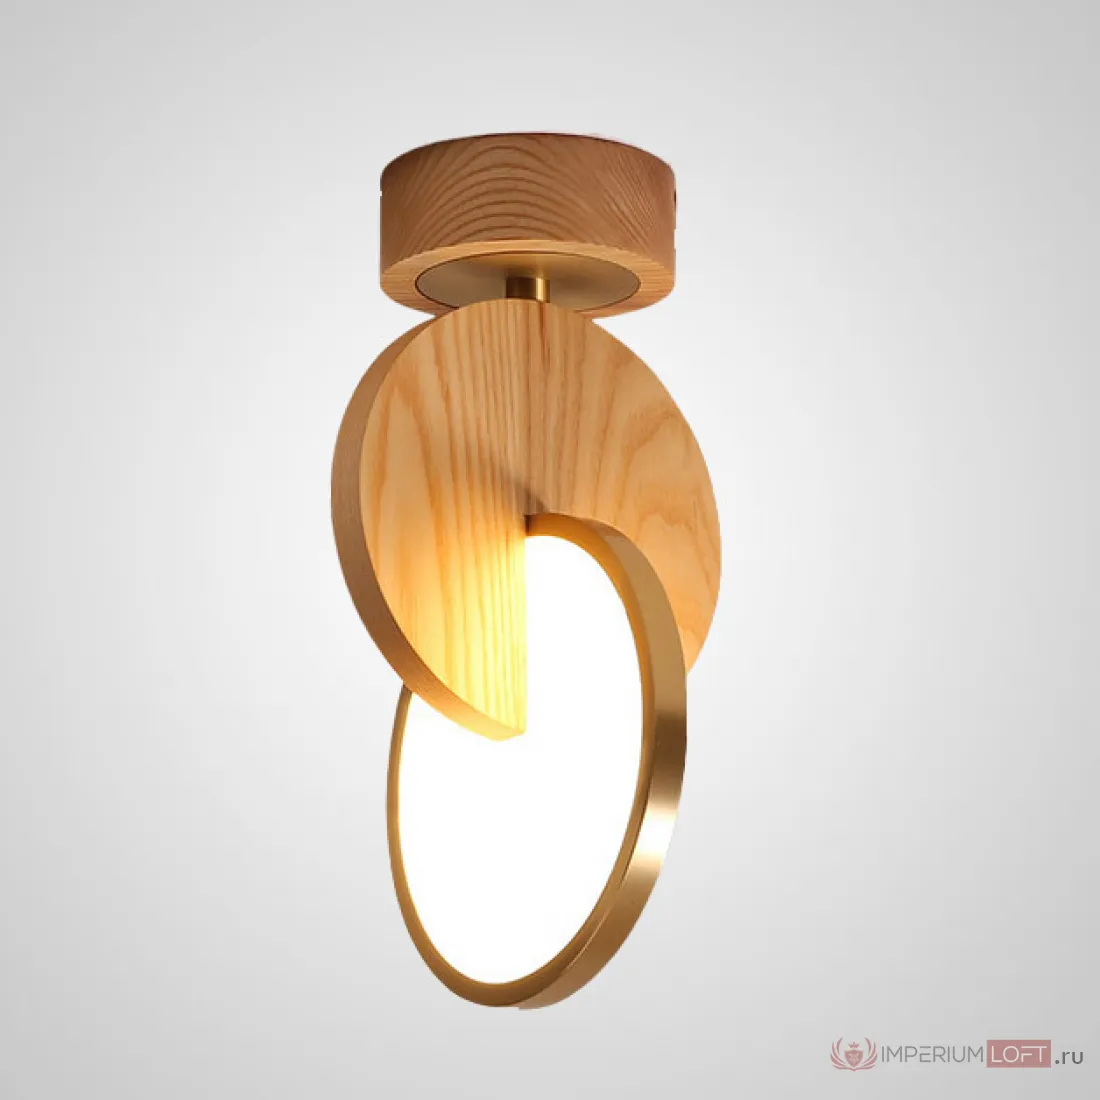 Светильник Eclipse Wood. Настенный светильник в форме 2 пересекающихся колец купить.